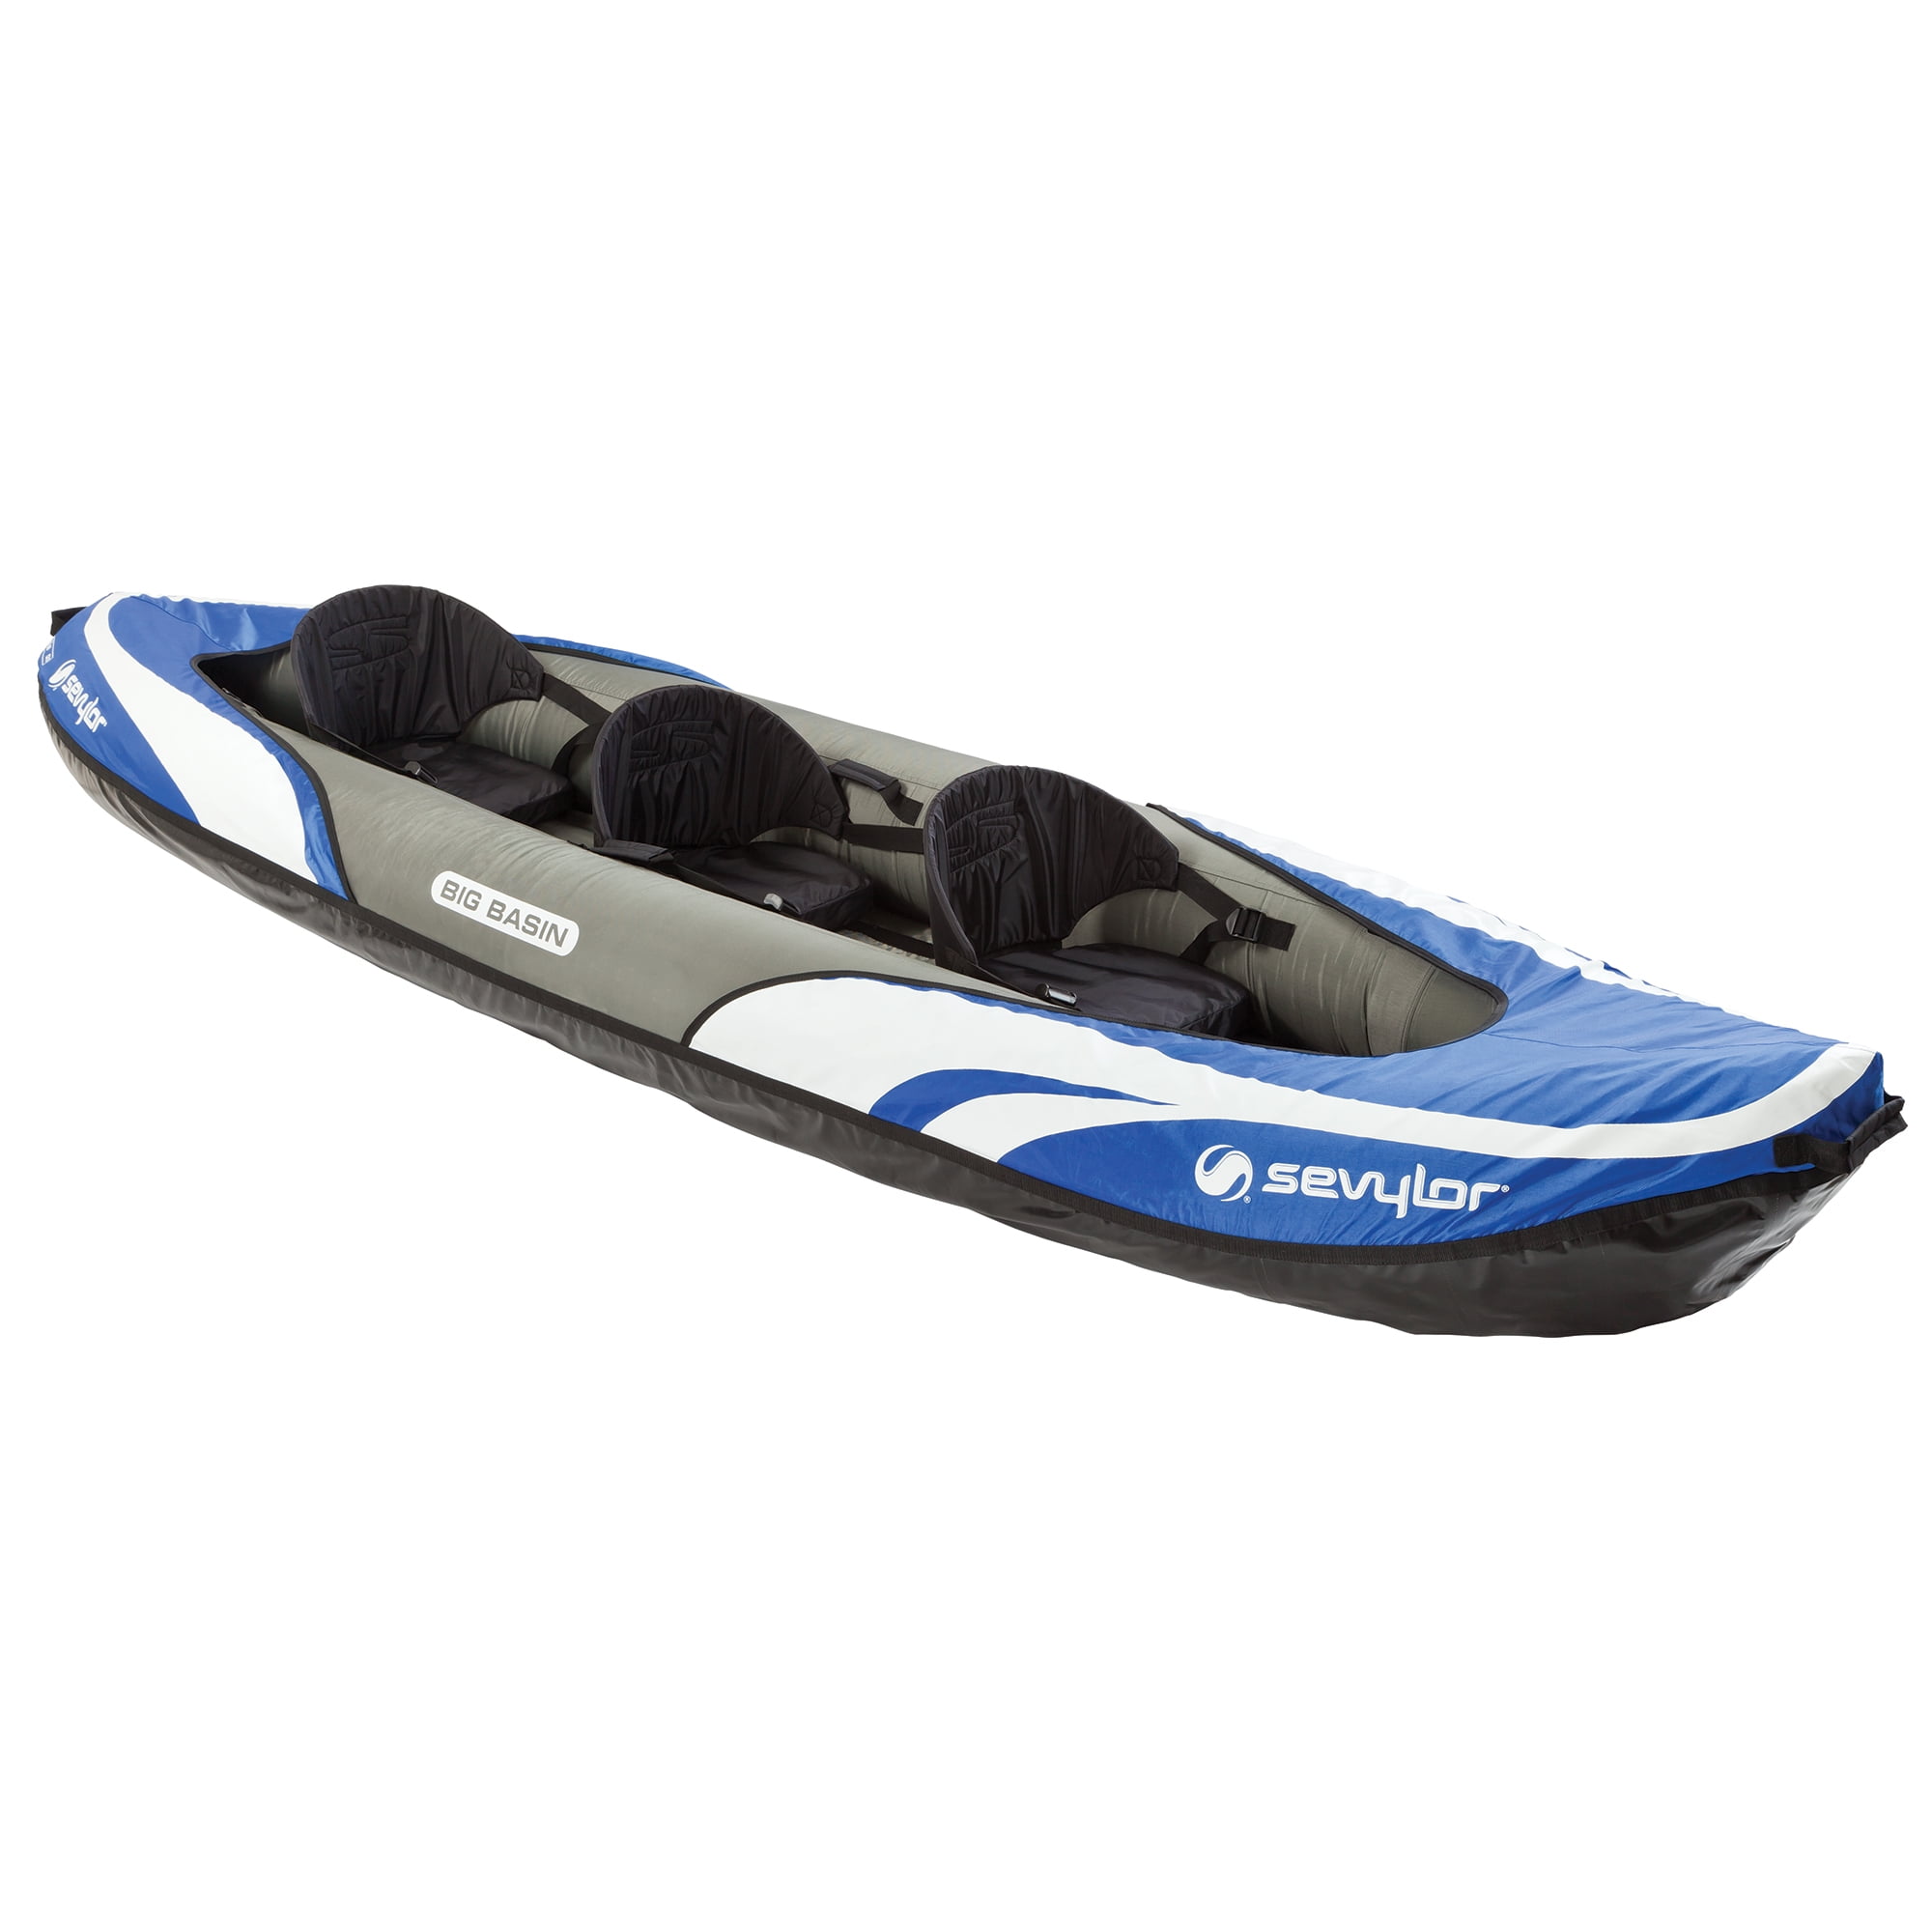 Duplicar Albany Polémico Sevylor Big Basin 3-Person Inflatable Kayak with Carry Bag - Walmart.com